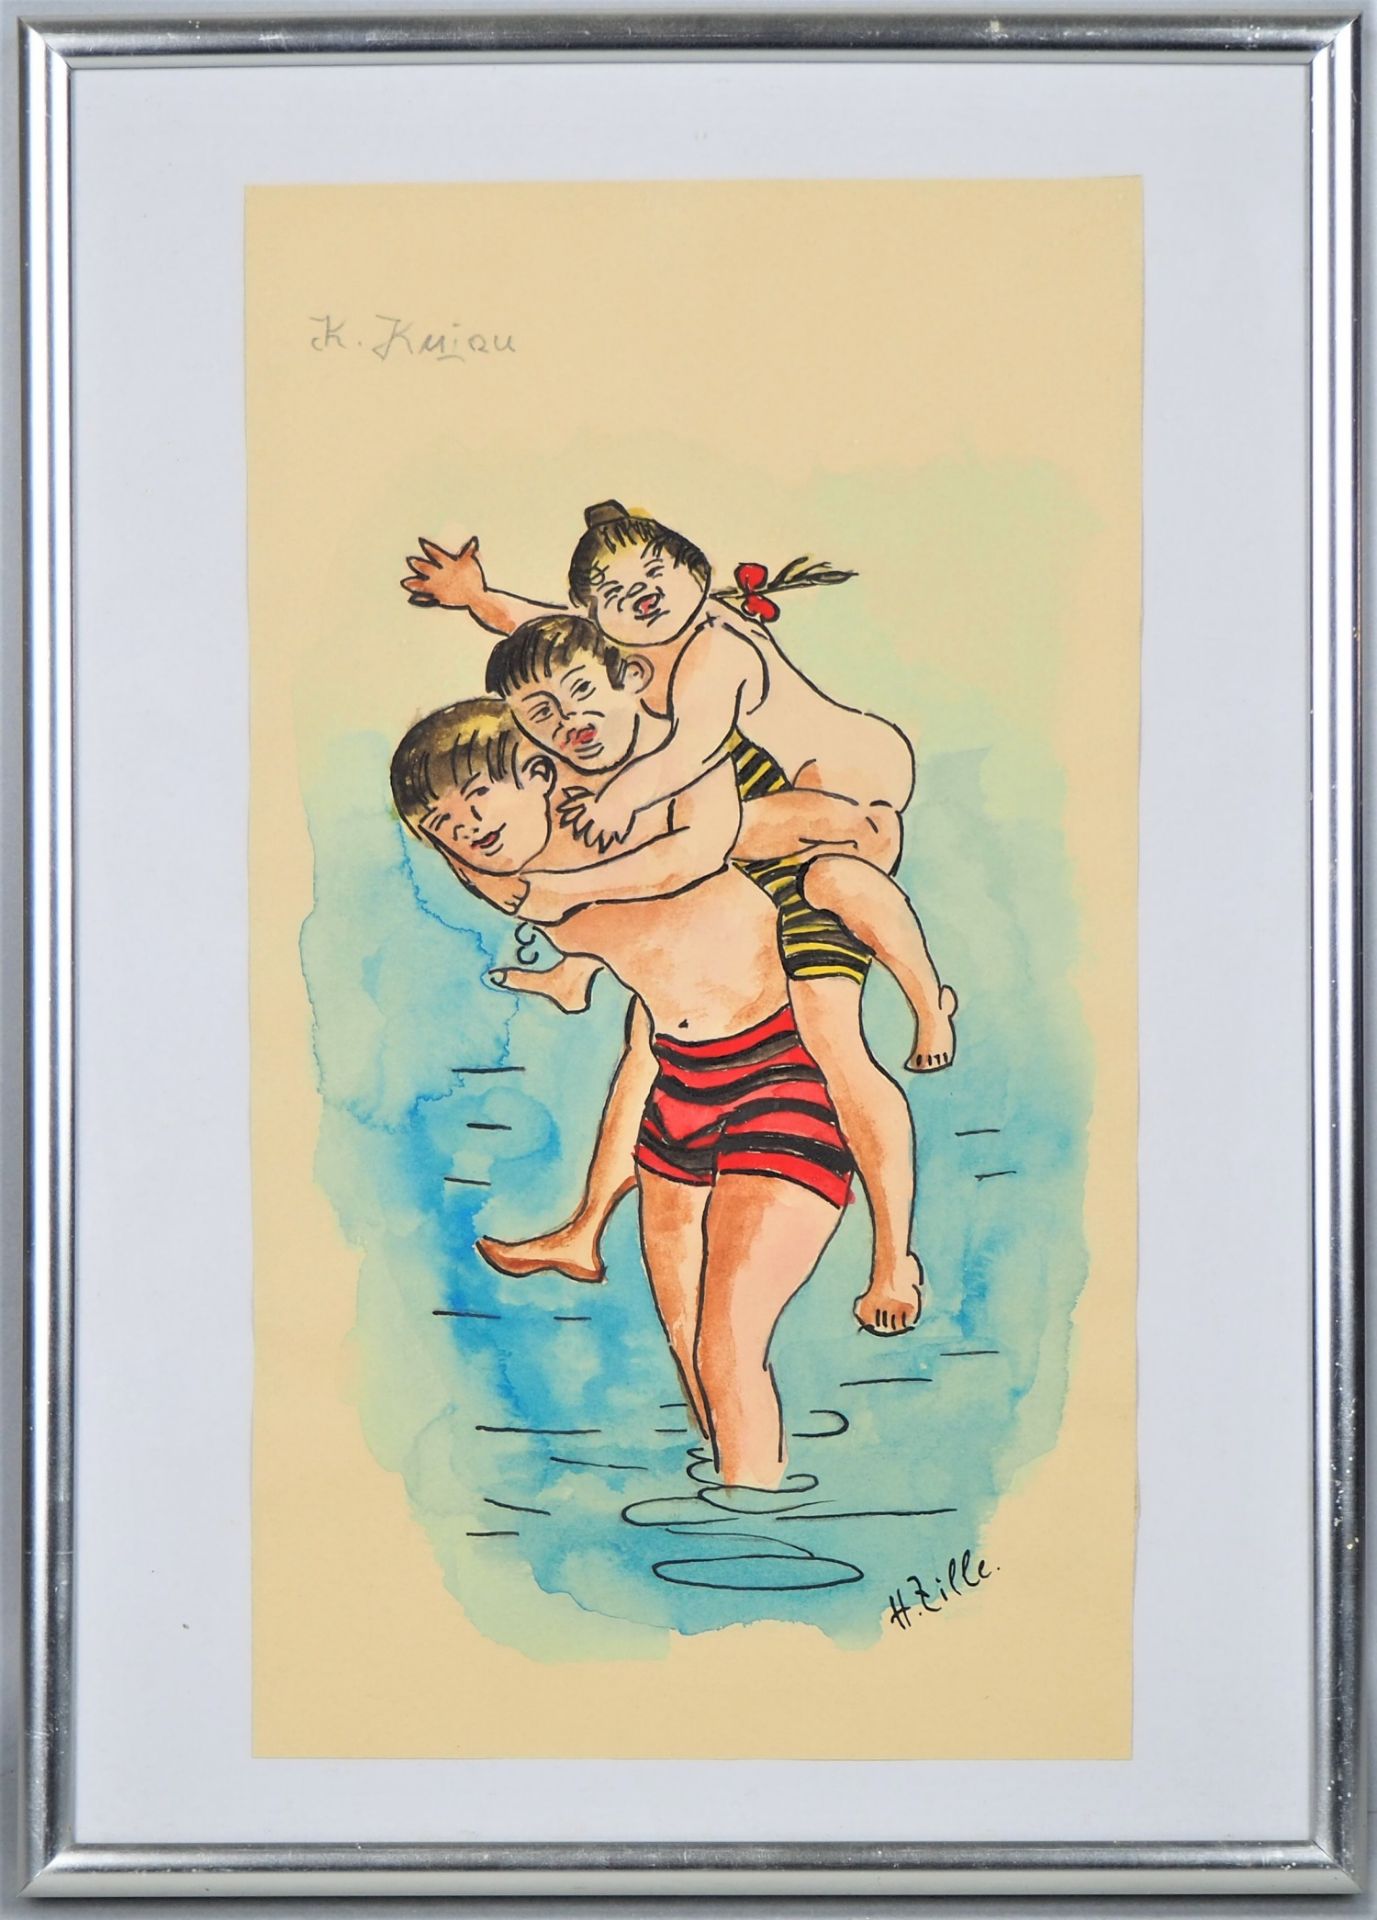 Konrad Kujau (1938-2000), watercolor with ink, bath scene.